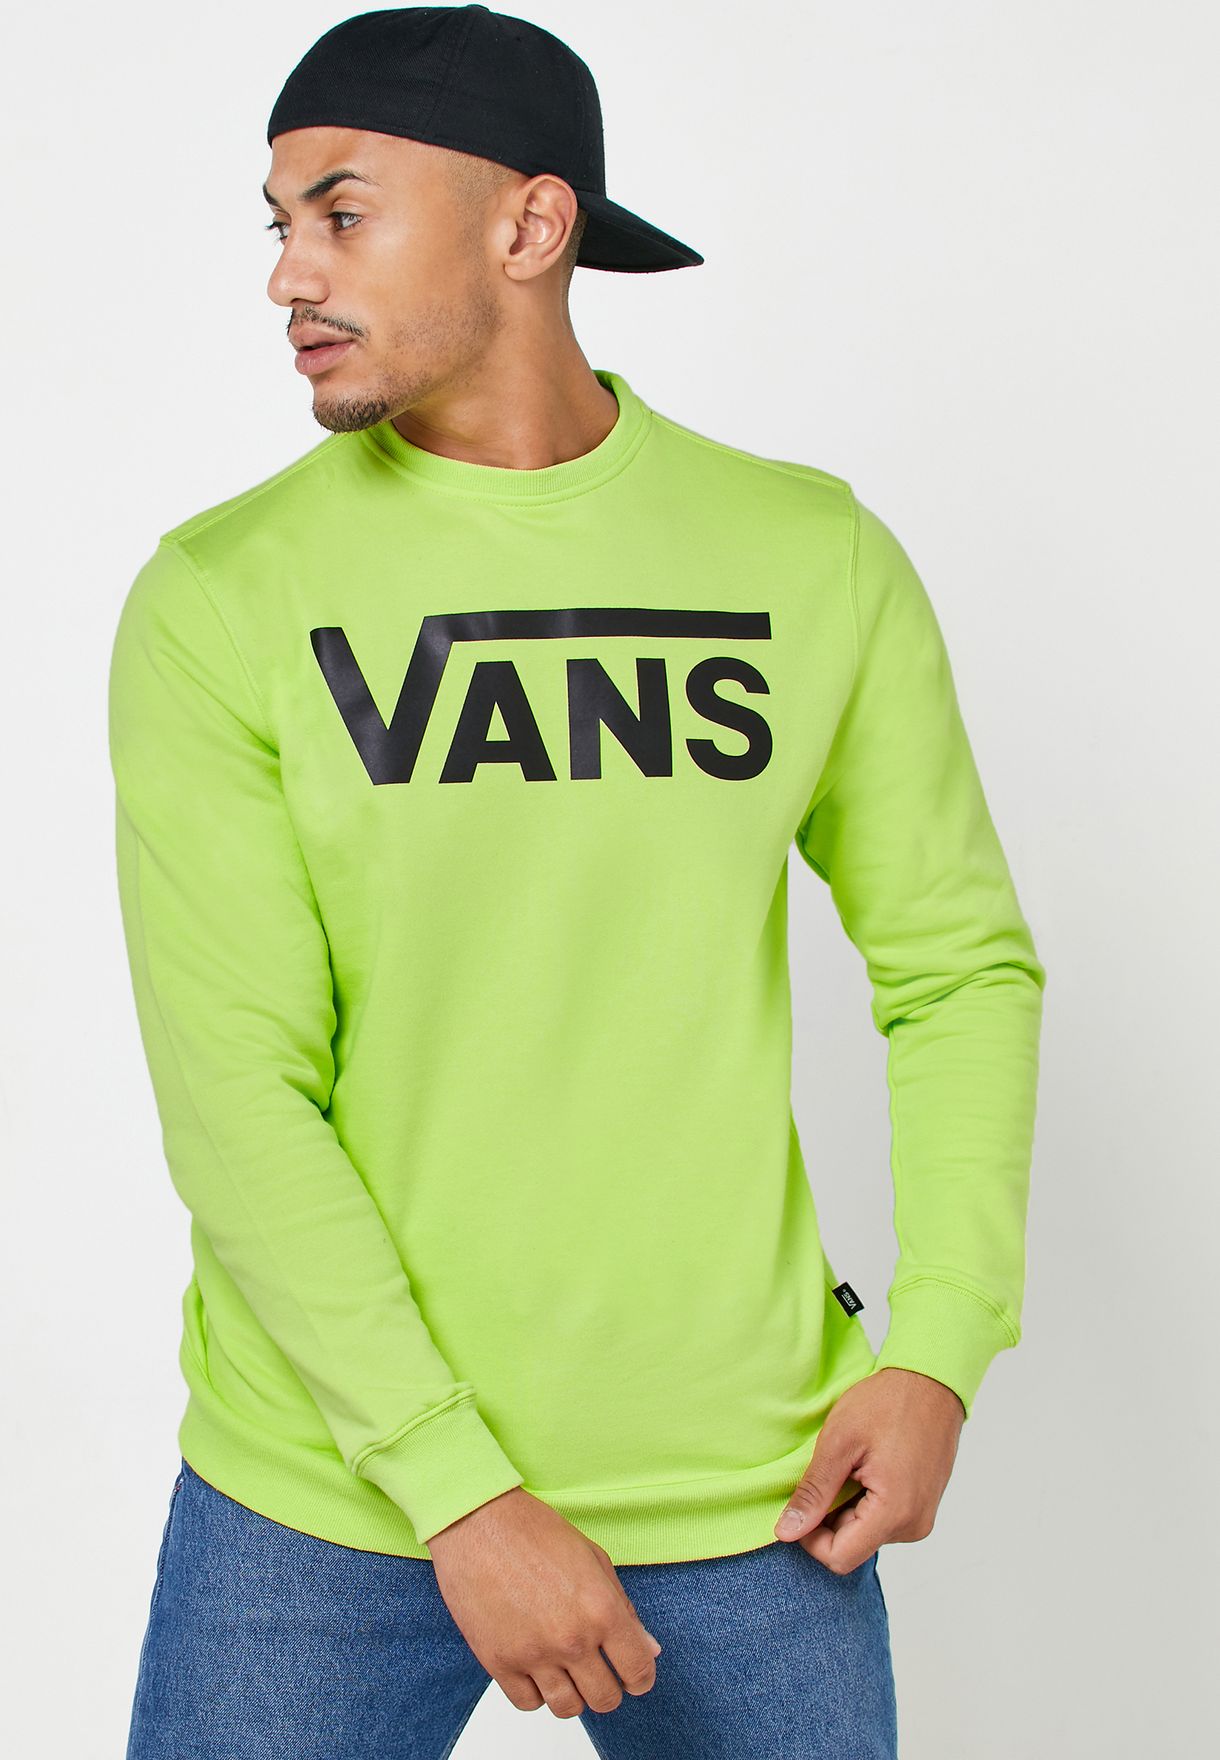 Buy Vans green Classic Sweatshirt for 